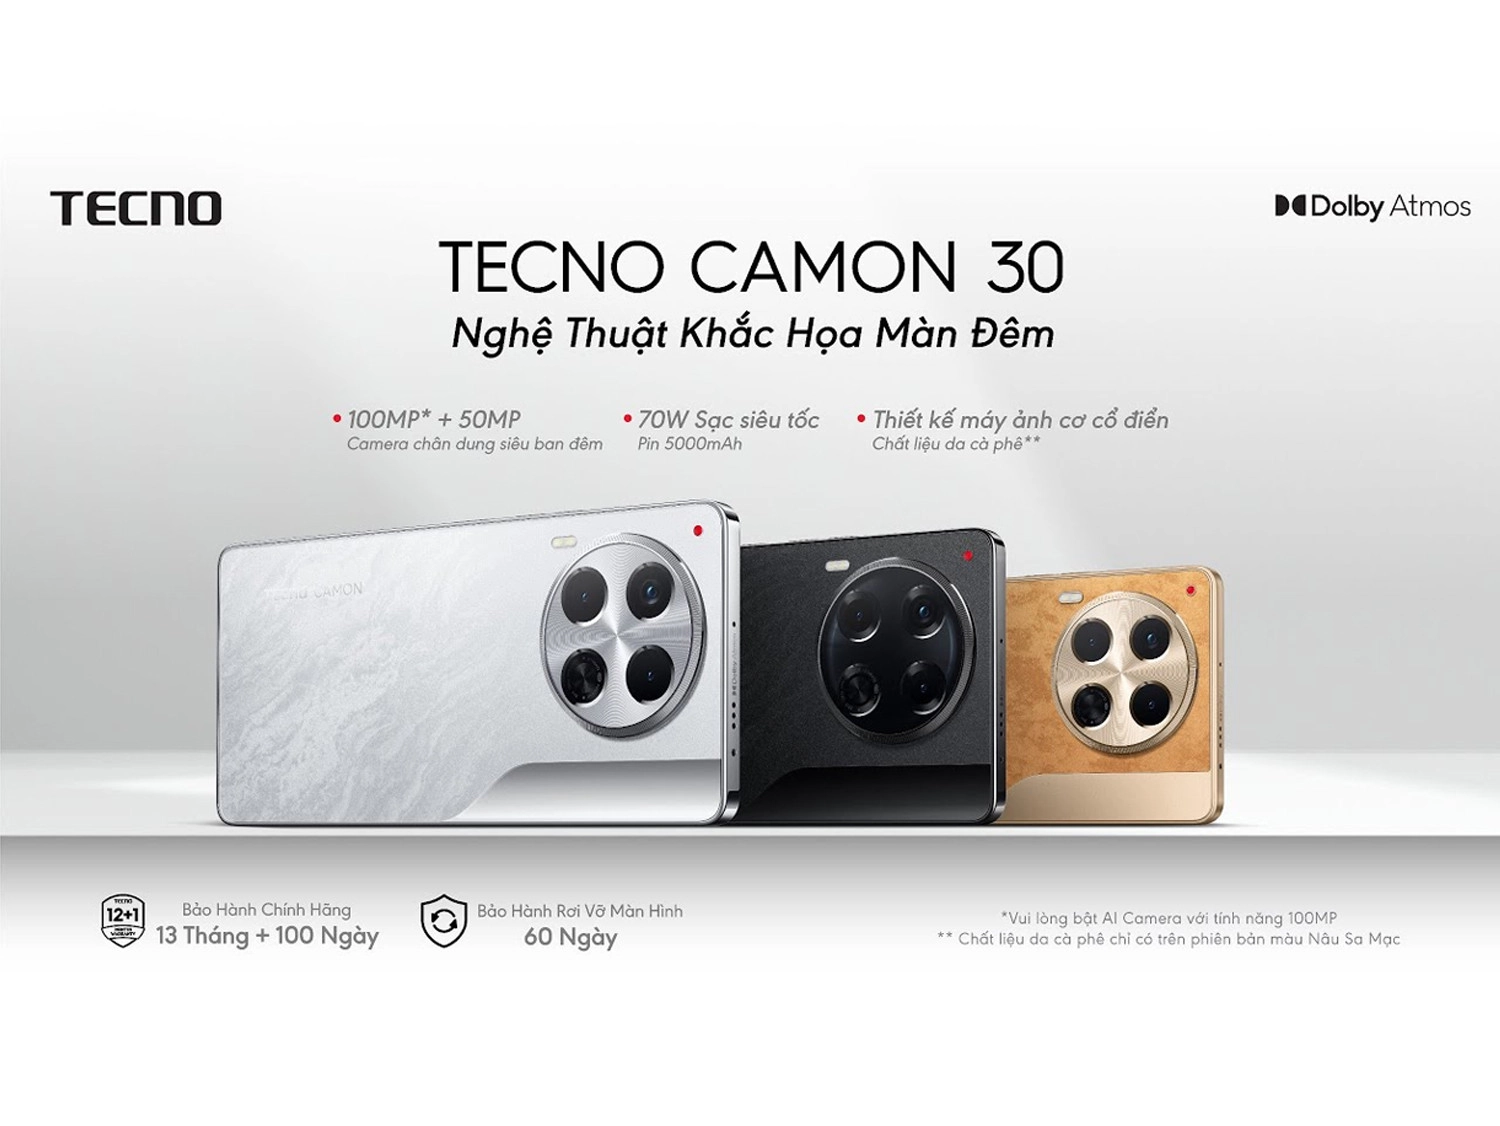 Các tùy chọn màu sắc của Tecno CAMON 30